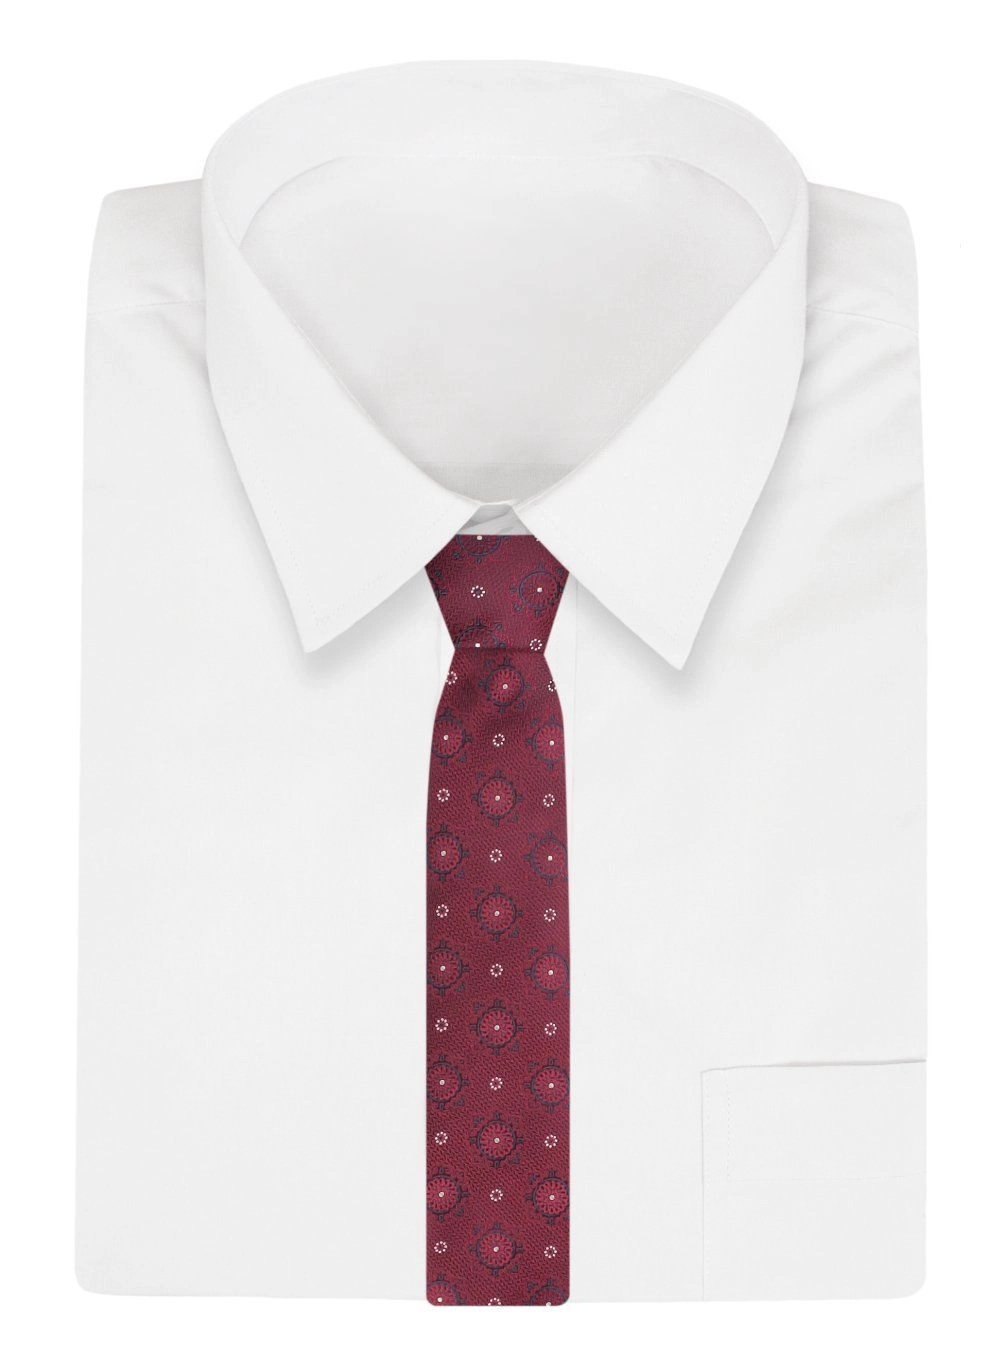 Krawat - ALTIES - Czerwony, Grochy